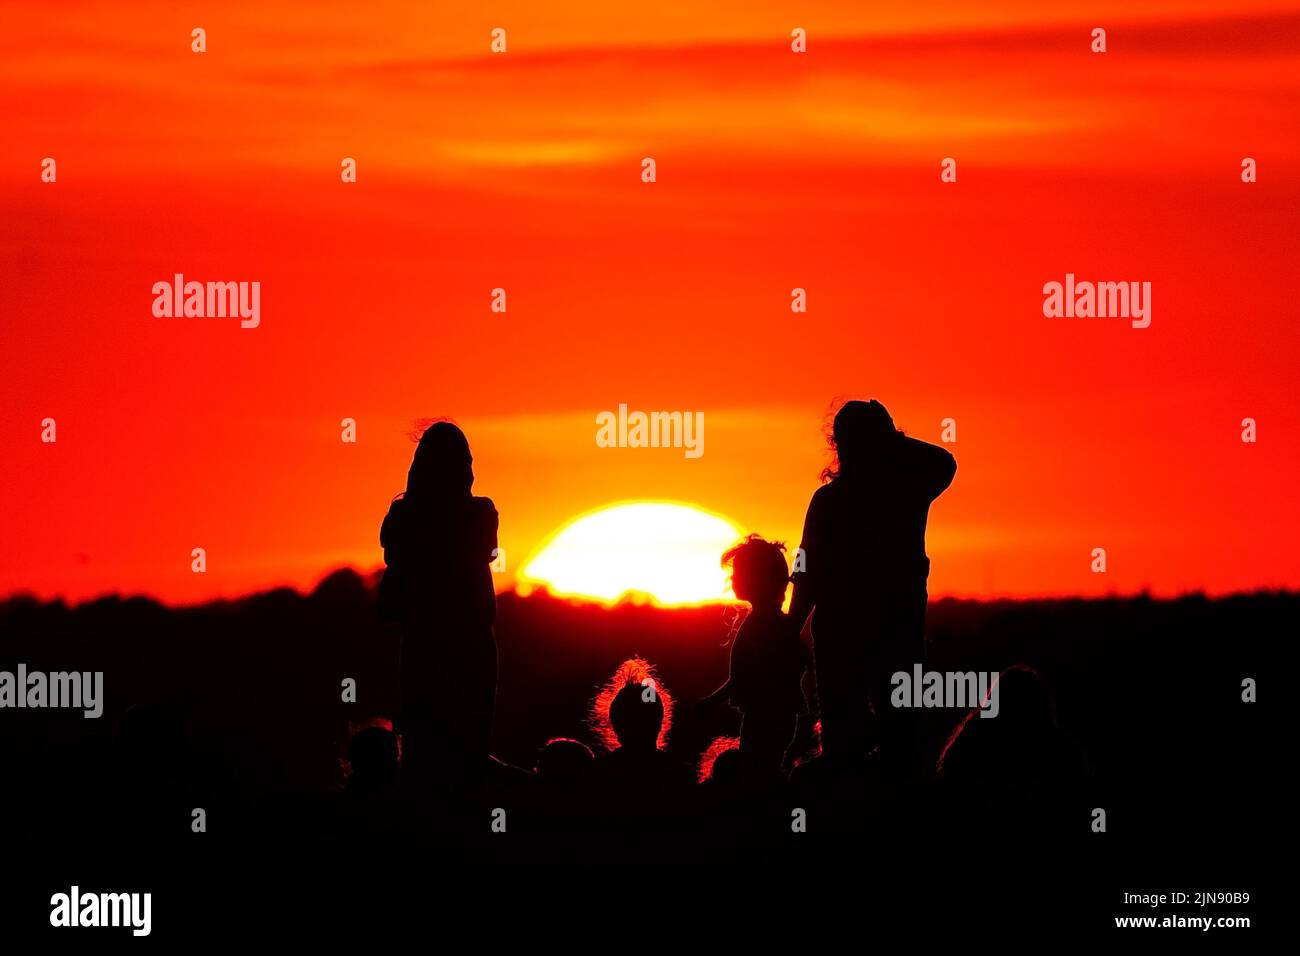 Un grupo de personas observa la puesta de sol desde una colina en Ealing, al oeste de Londres, mientras continúa un verano de prohibiciones de tubos de escape y advertencias de incendio, con una alerta de salud por calor que se está implantando en gran parte del país. Fecha de la foto: Martes 9 de agosto de 2022. Foto de stock